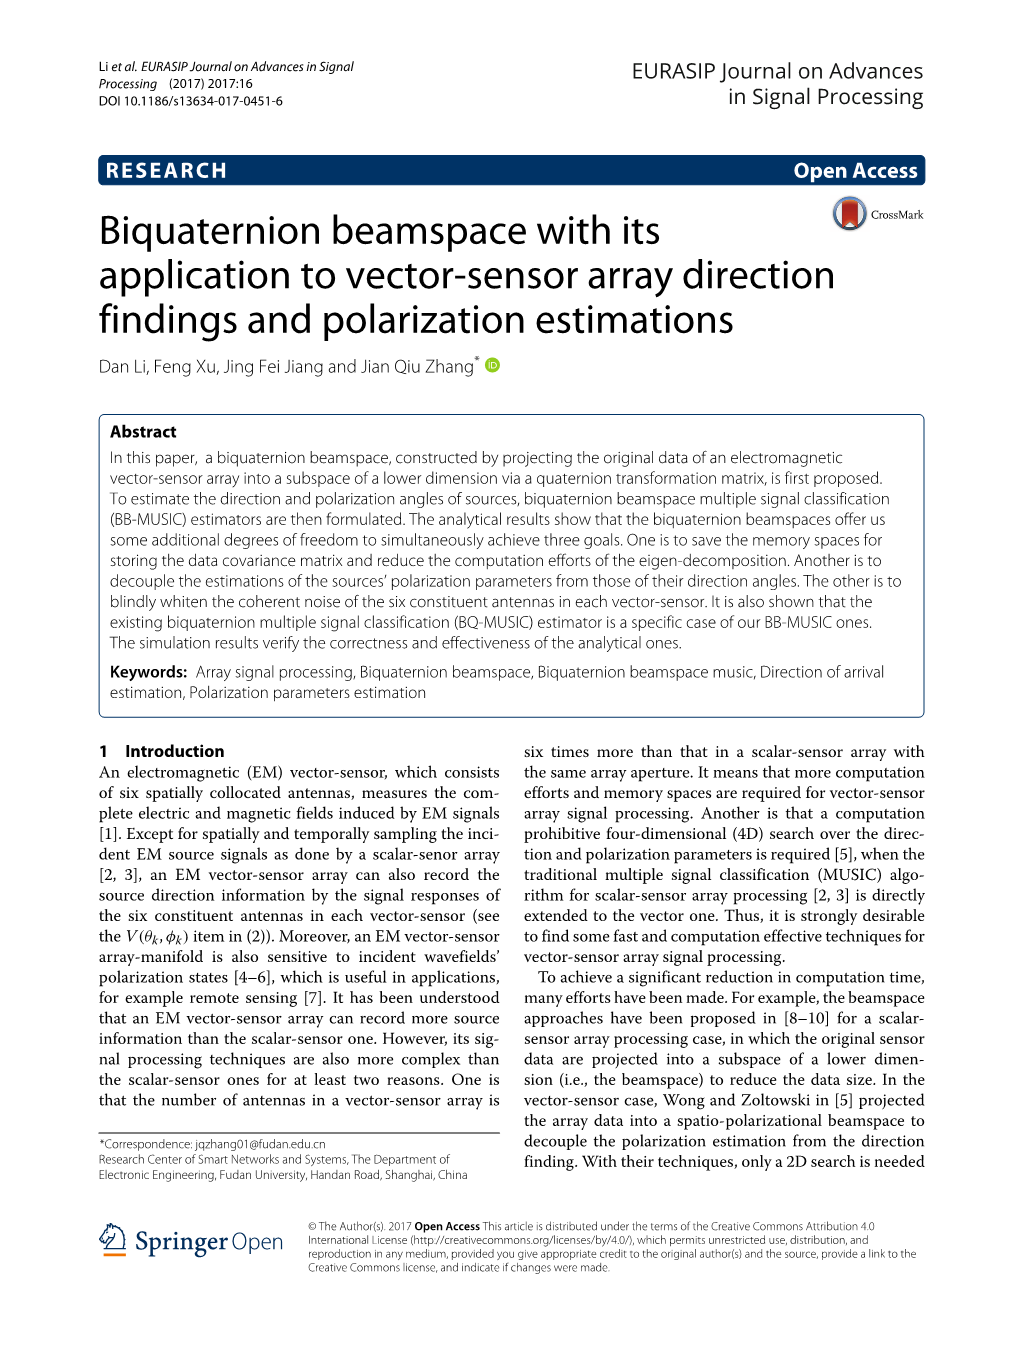 Biquaternion Beamspace with Its Application to Vector-Sensor Array Direction Findings and Polarization Estimations Dan Li, Feng Xu, Jing Fei Jiang and Jian Qiu Zhang*